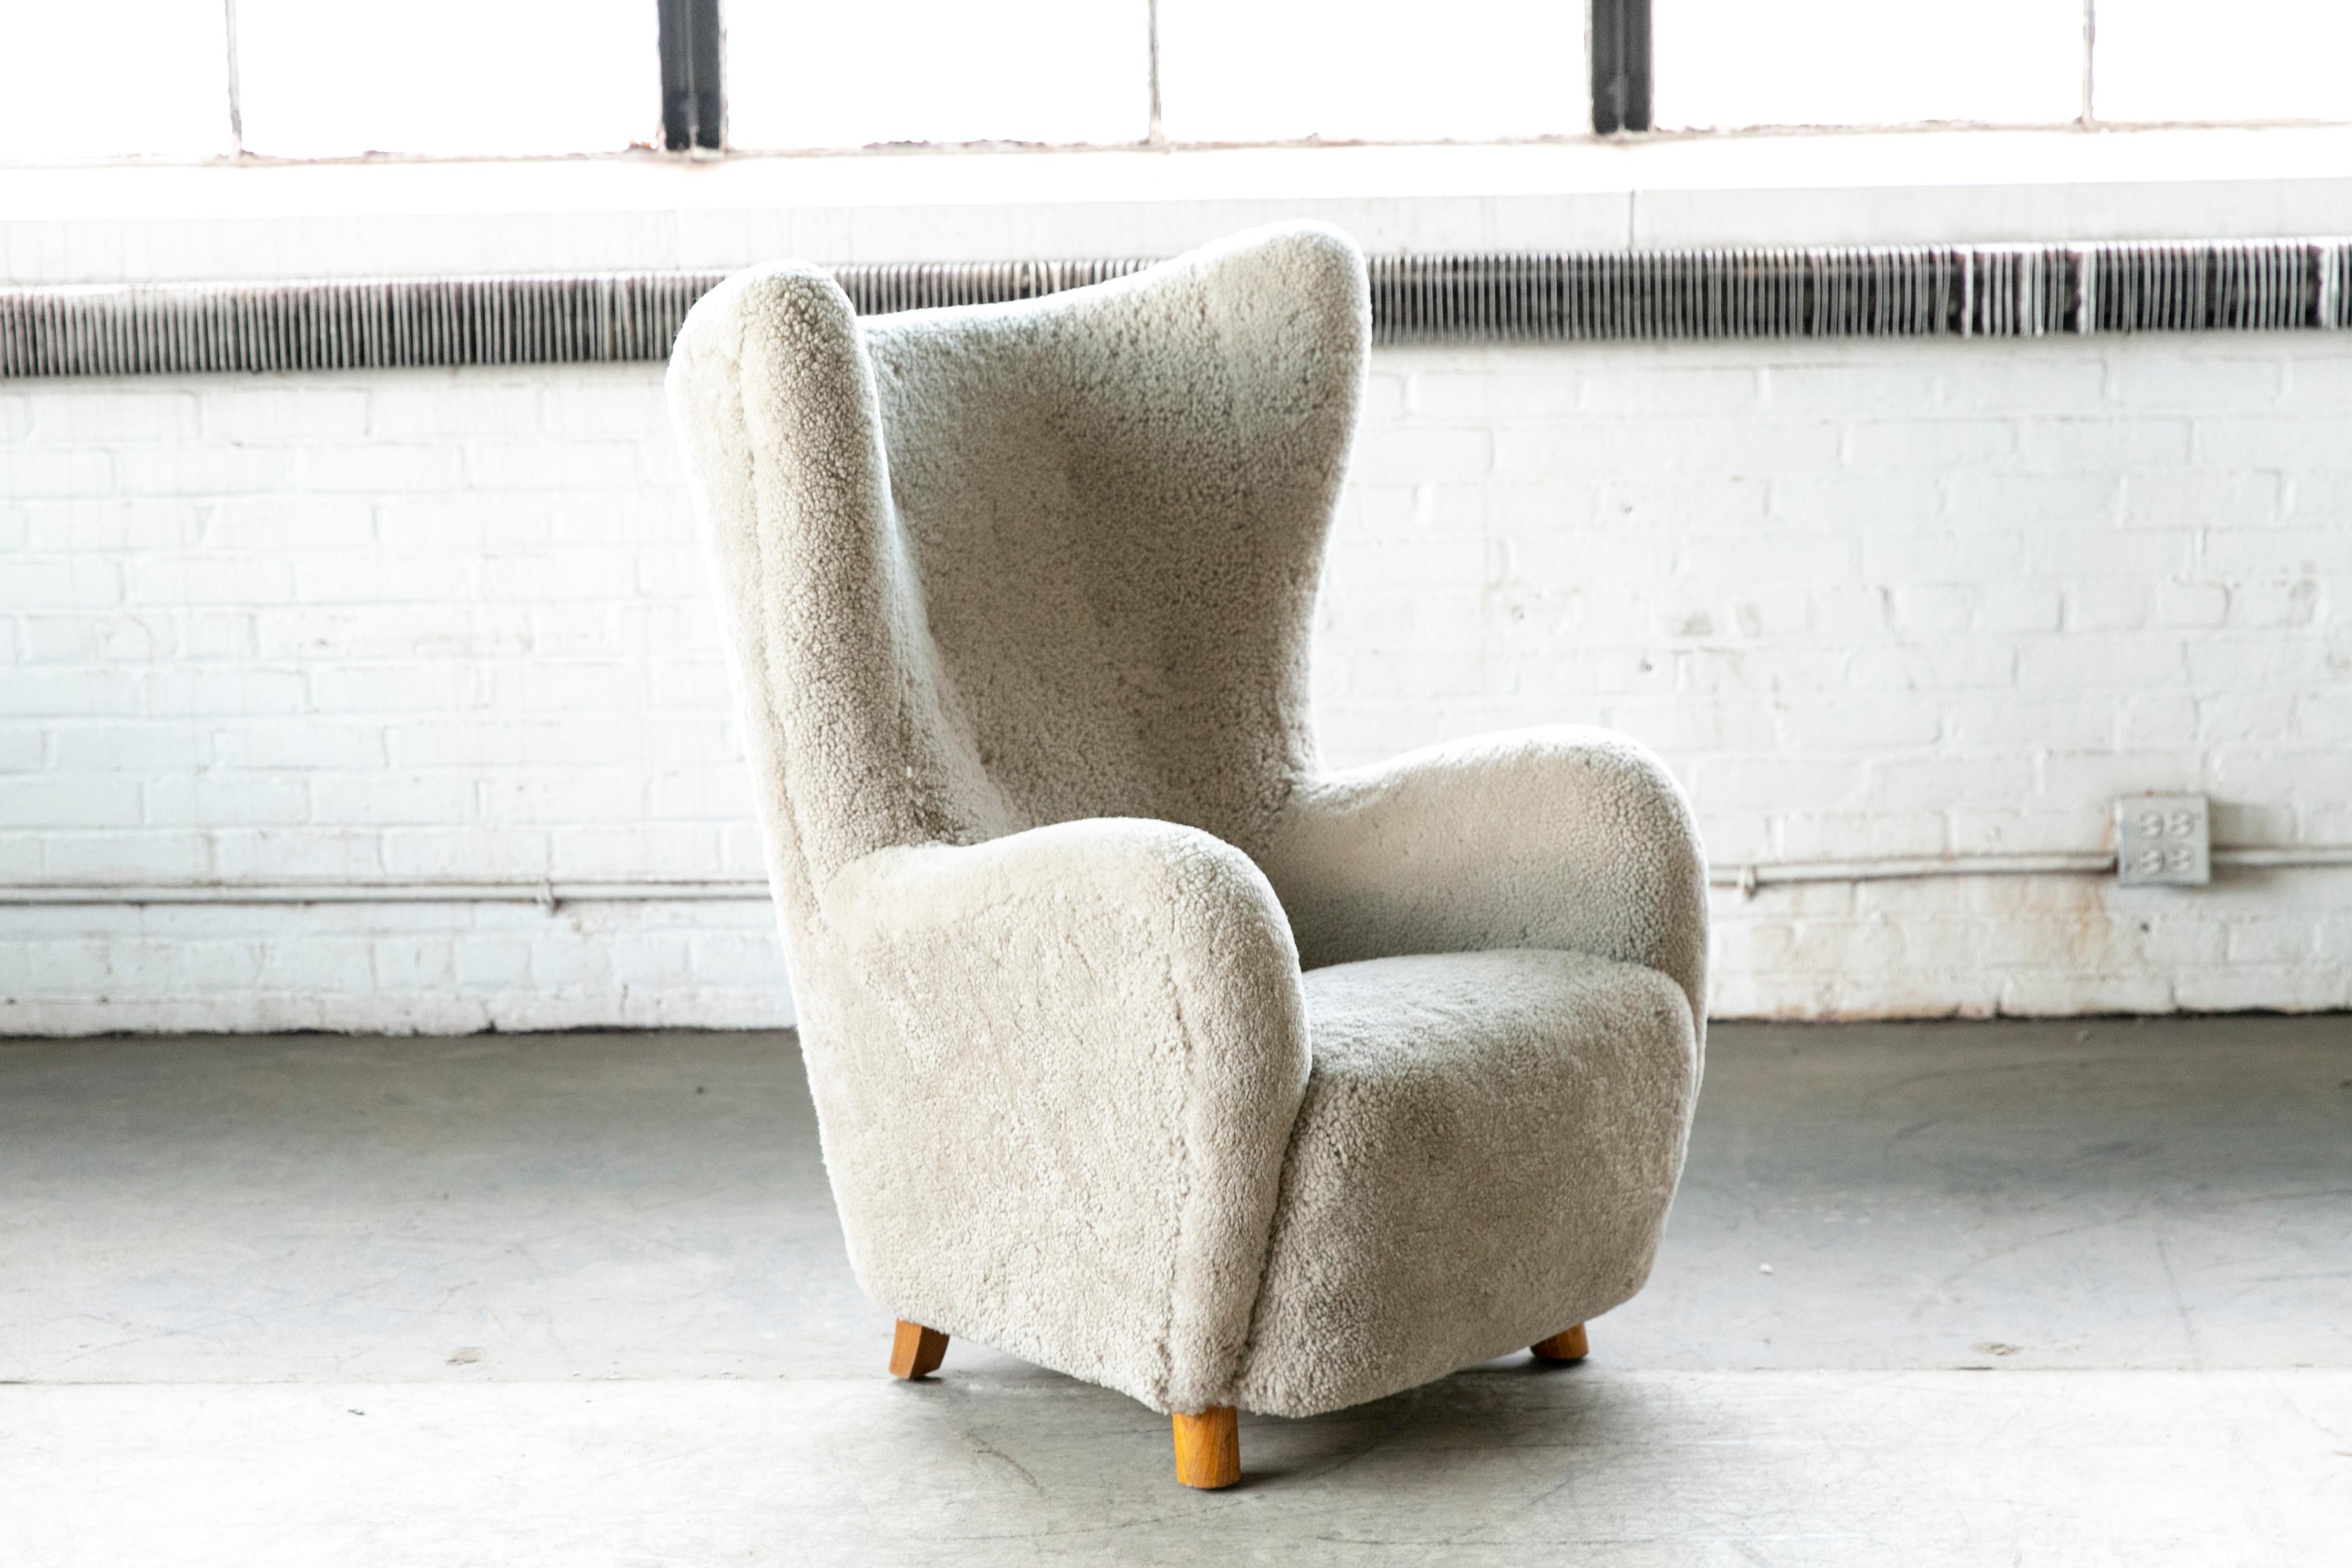 Magnifique fauteuil de salon à haut dossier attribué par Flemming Lassen, fabriqué vers 1940. Ce fauteuil de salon emblématique est probablement l'un des dossiers hauts les plus parfaits jamais conçus. Une pièce parfaite avec sa forme sensuelle